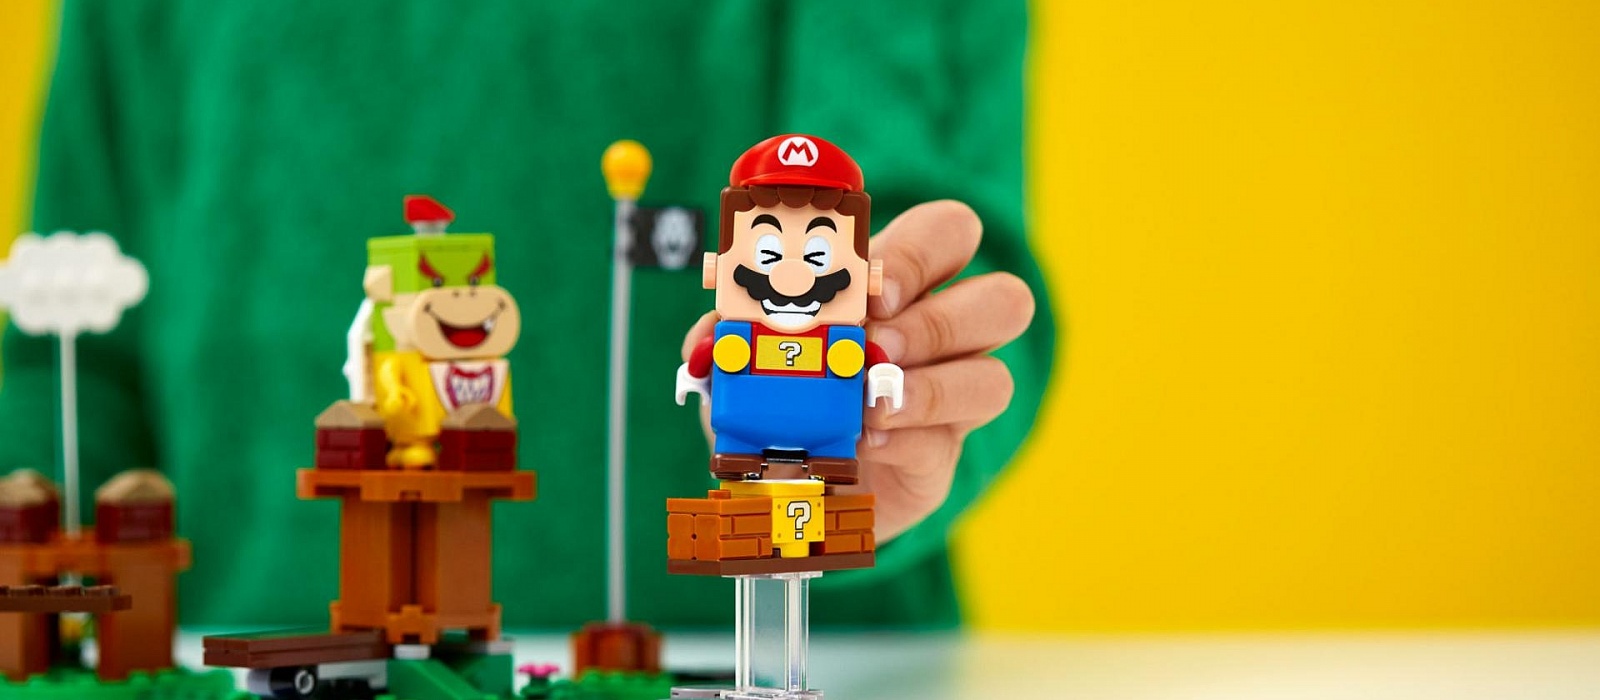 Энтузиаст использовал Марио из Lego, чтобы играть в Super Mario Bros.